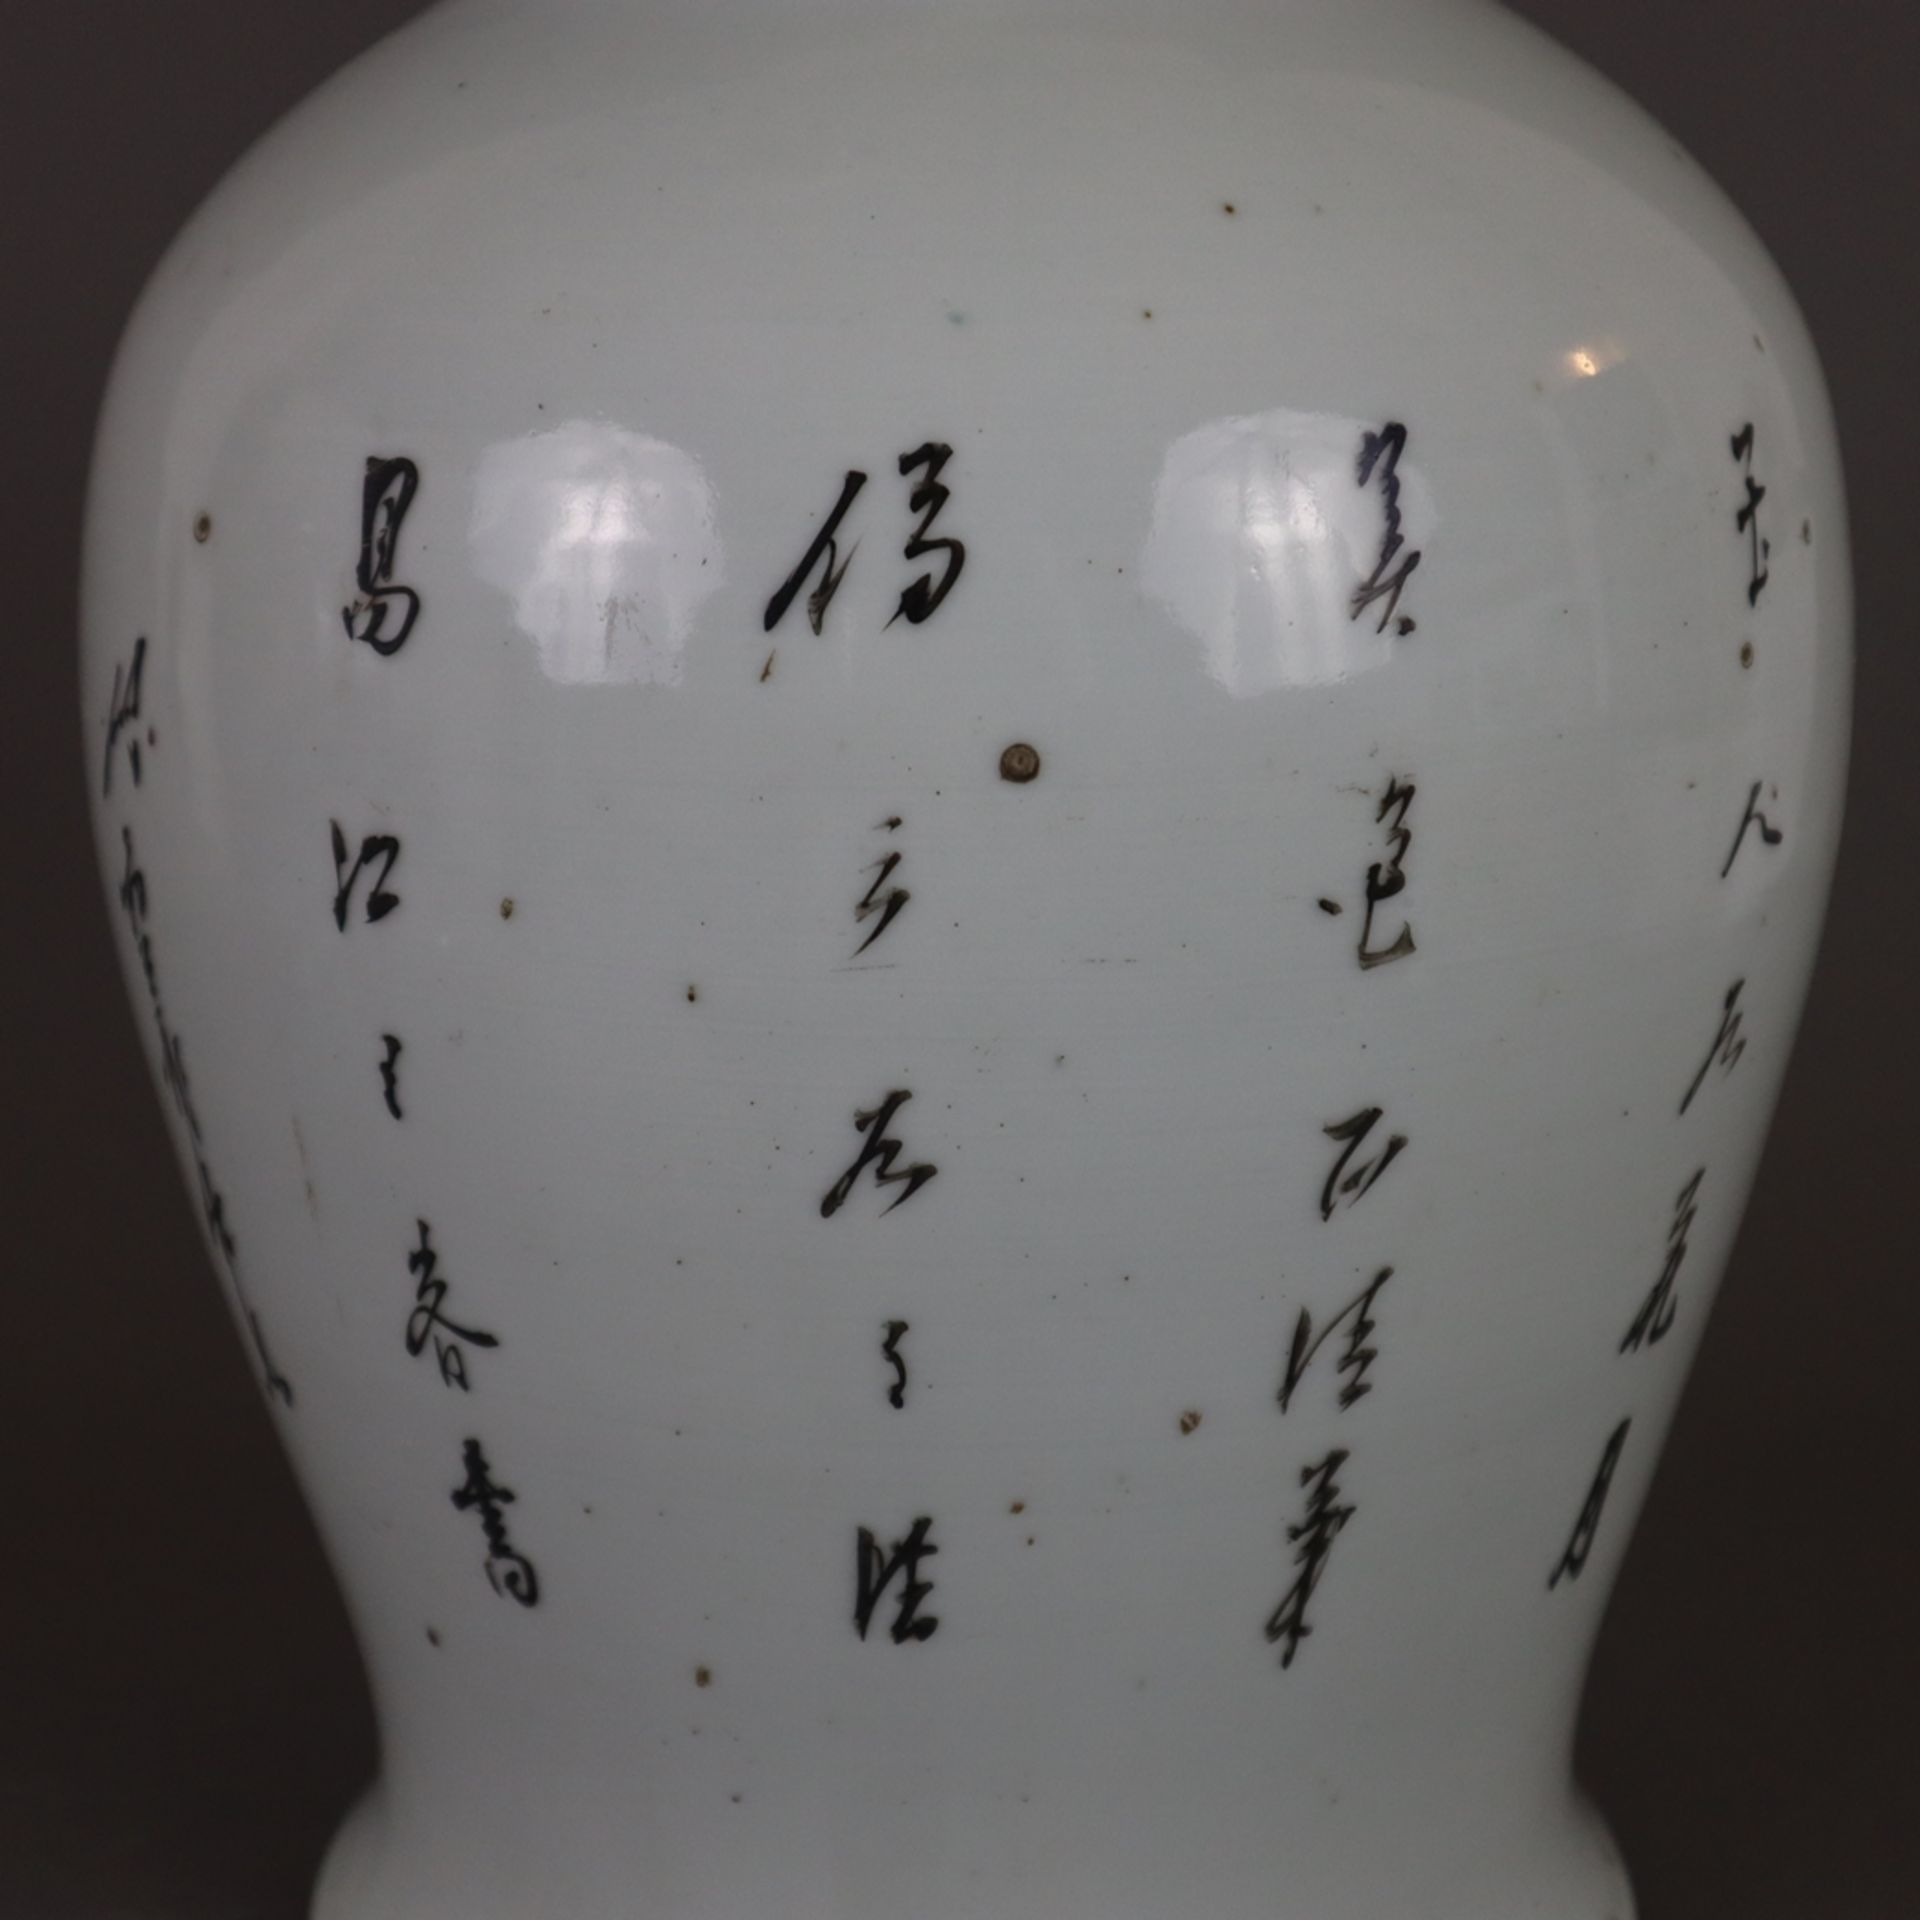 Ein Paar Famille rose-Vasen - China, späte Qing-Dynastie, Porzellan, polychrome Bemalung in der Far - Bild 7 aus 13